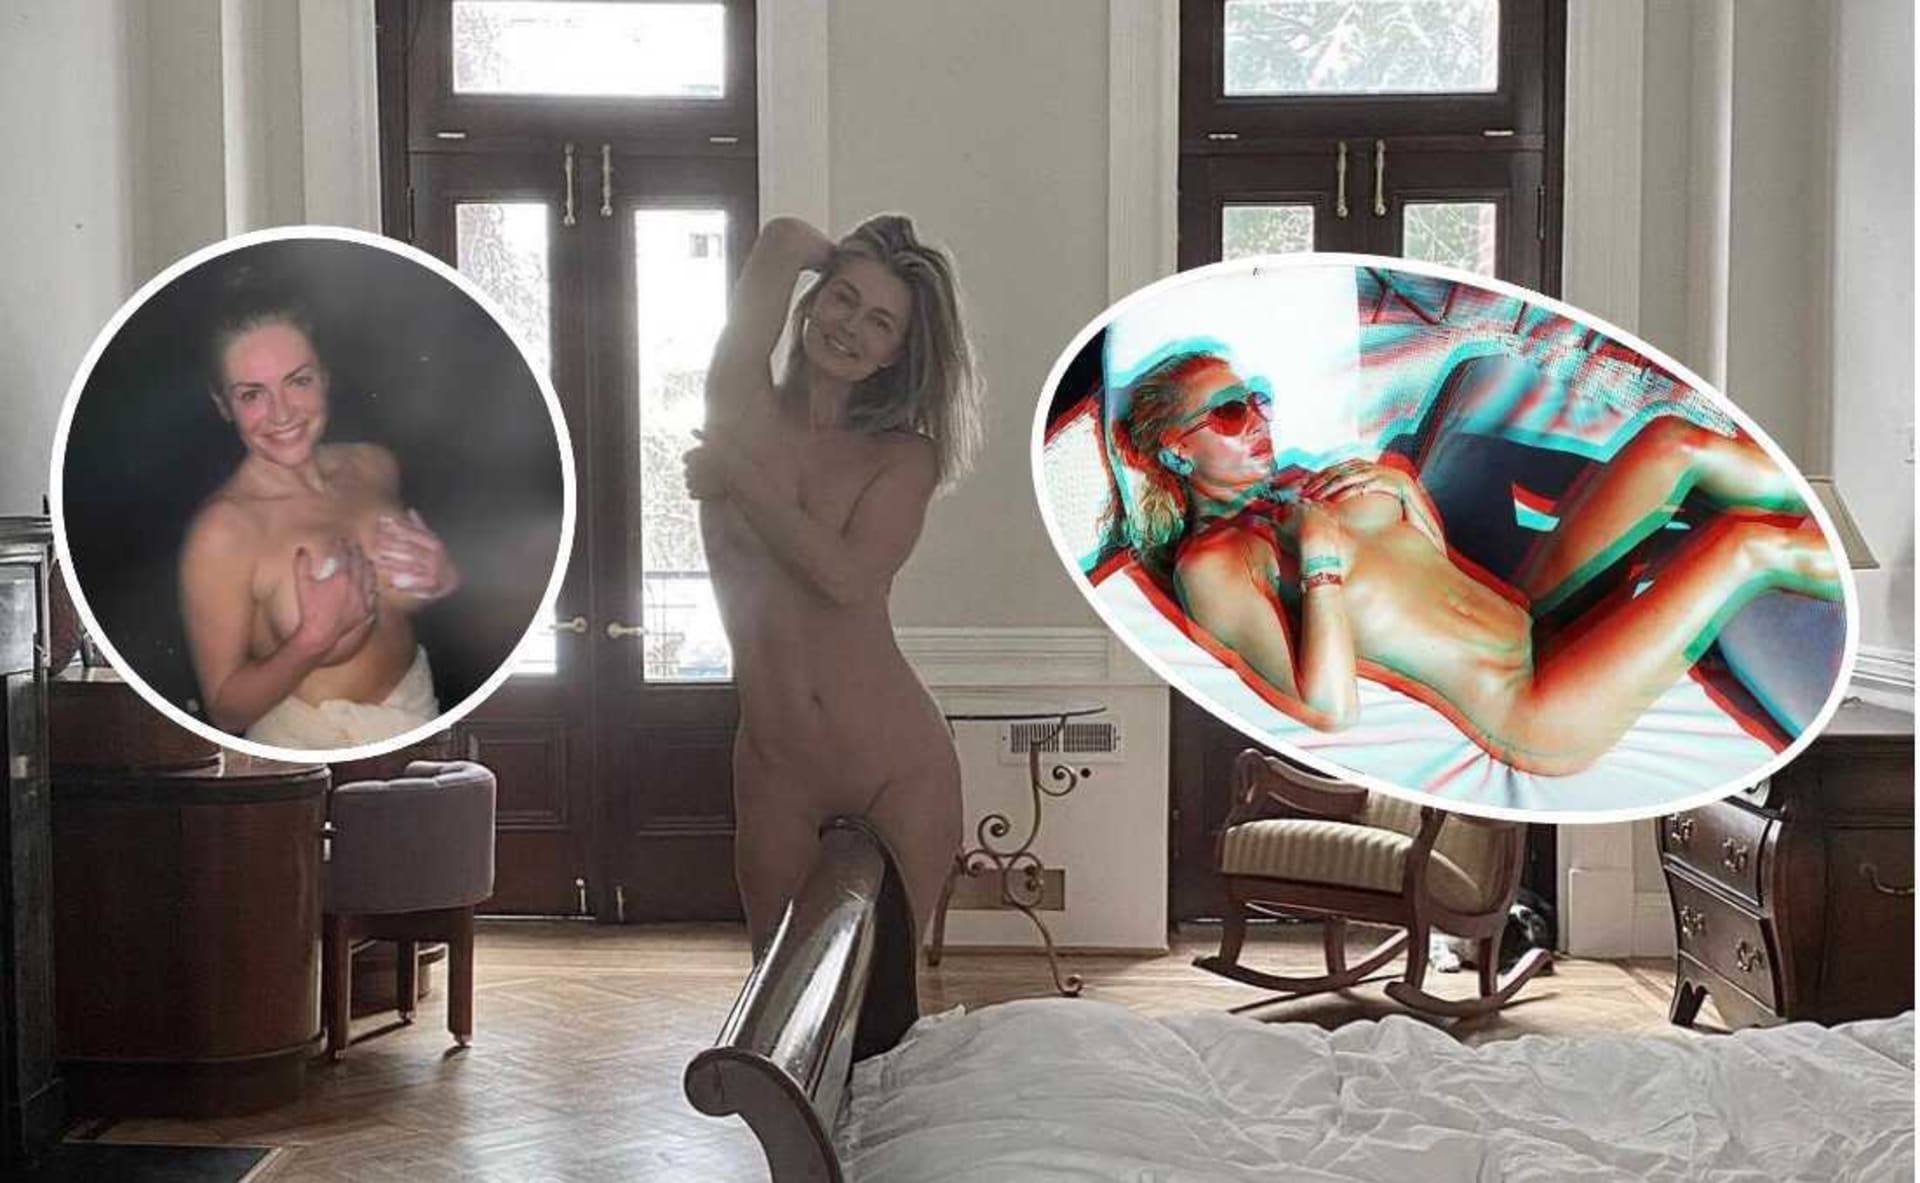 Pavlína Pořízková i Simona Krainová šly na Instagramu donaha. Propagují krásu lidského těla.